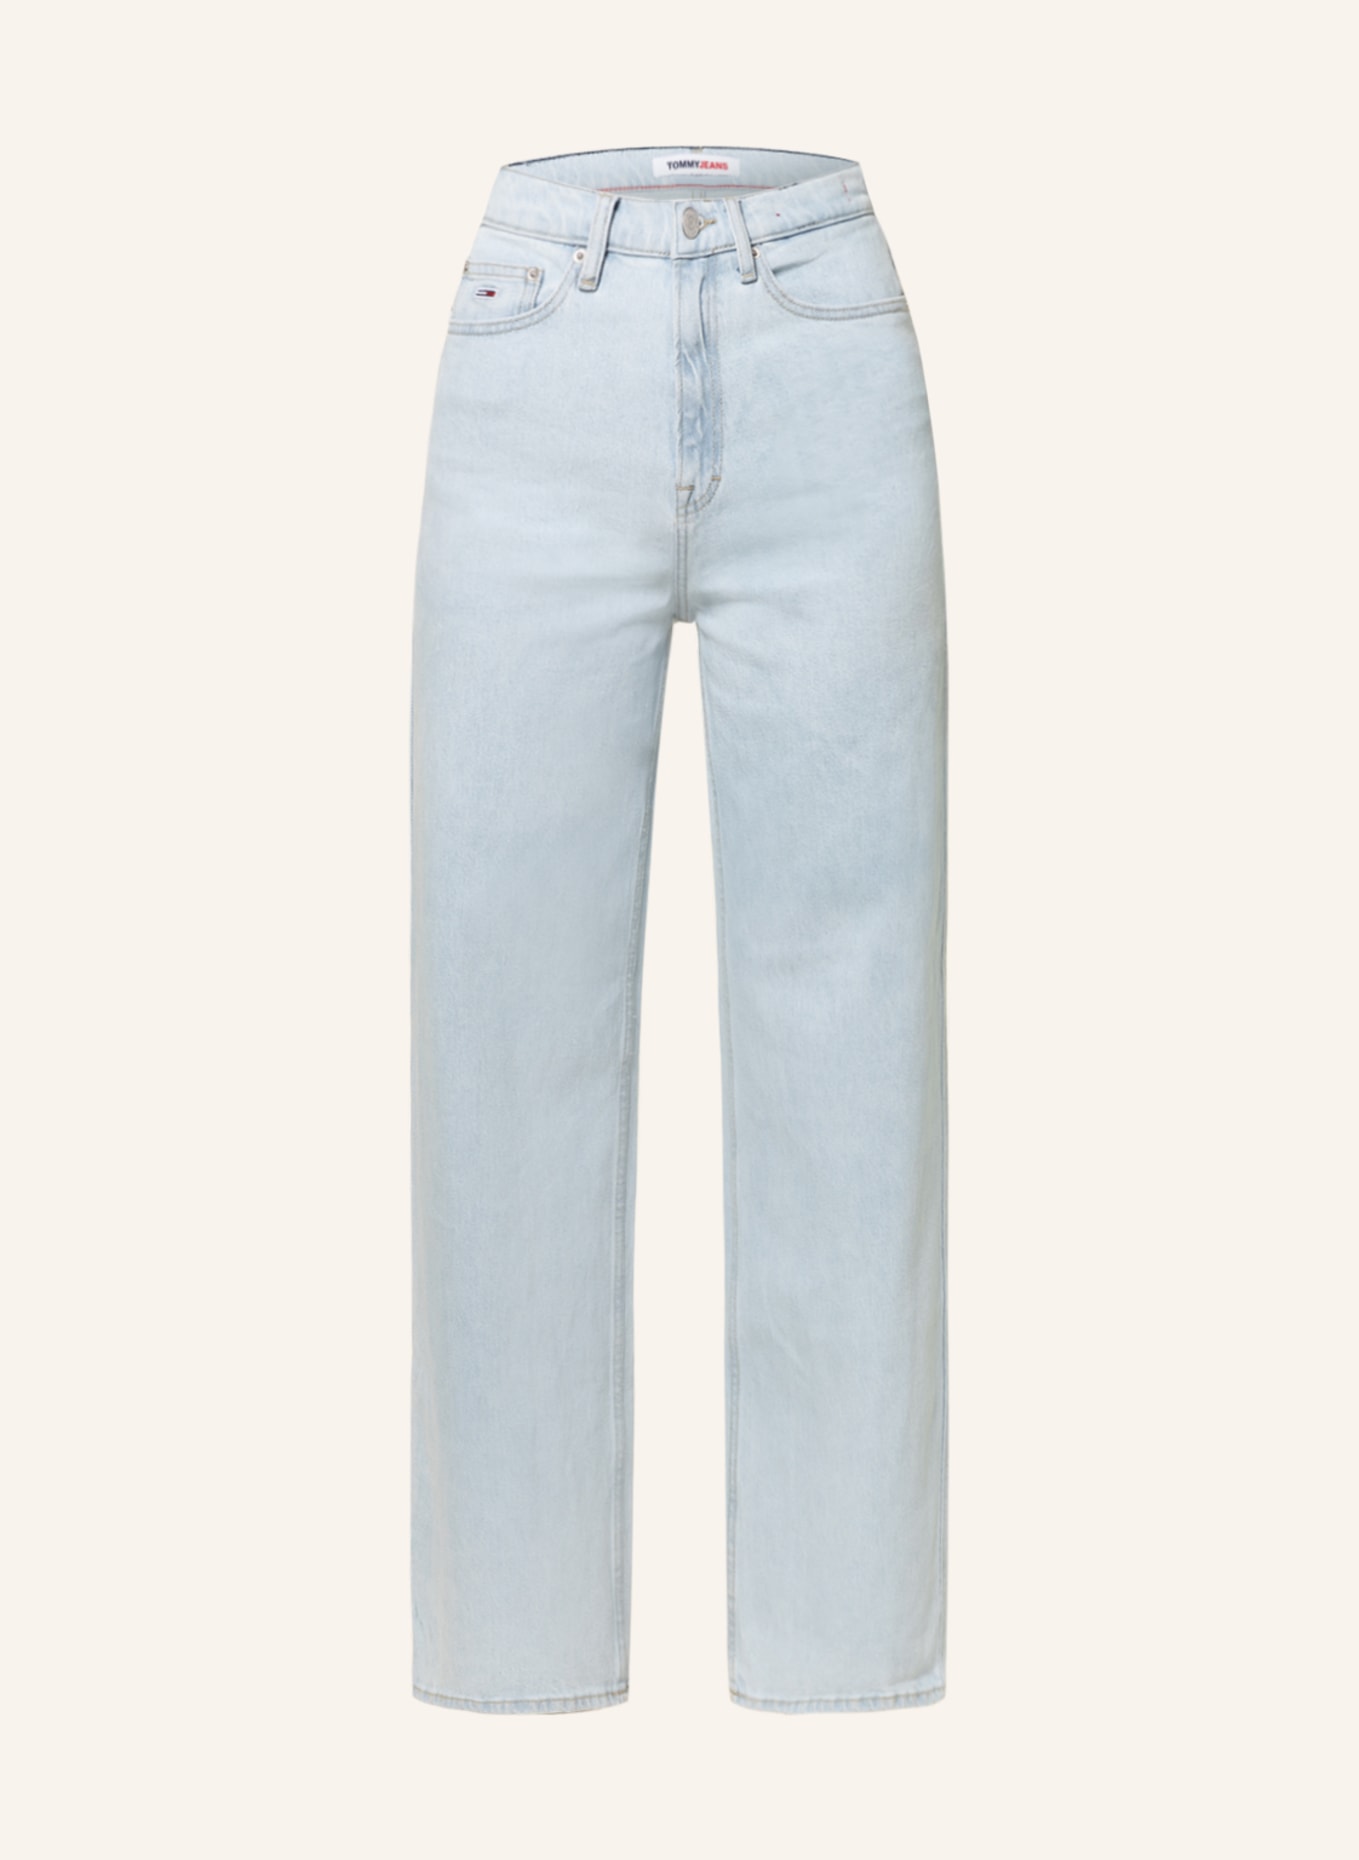 TOMMY JEANS Jeans CLAIRE, Color: 1AB Denim Light (Image 1)